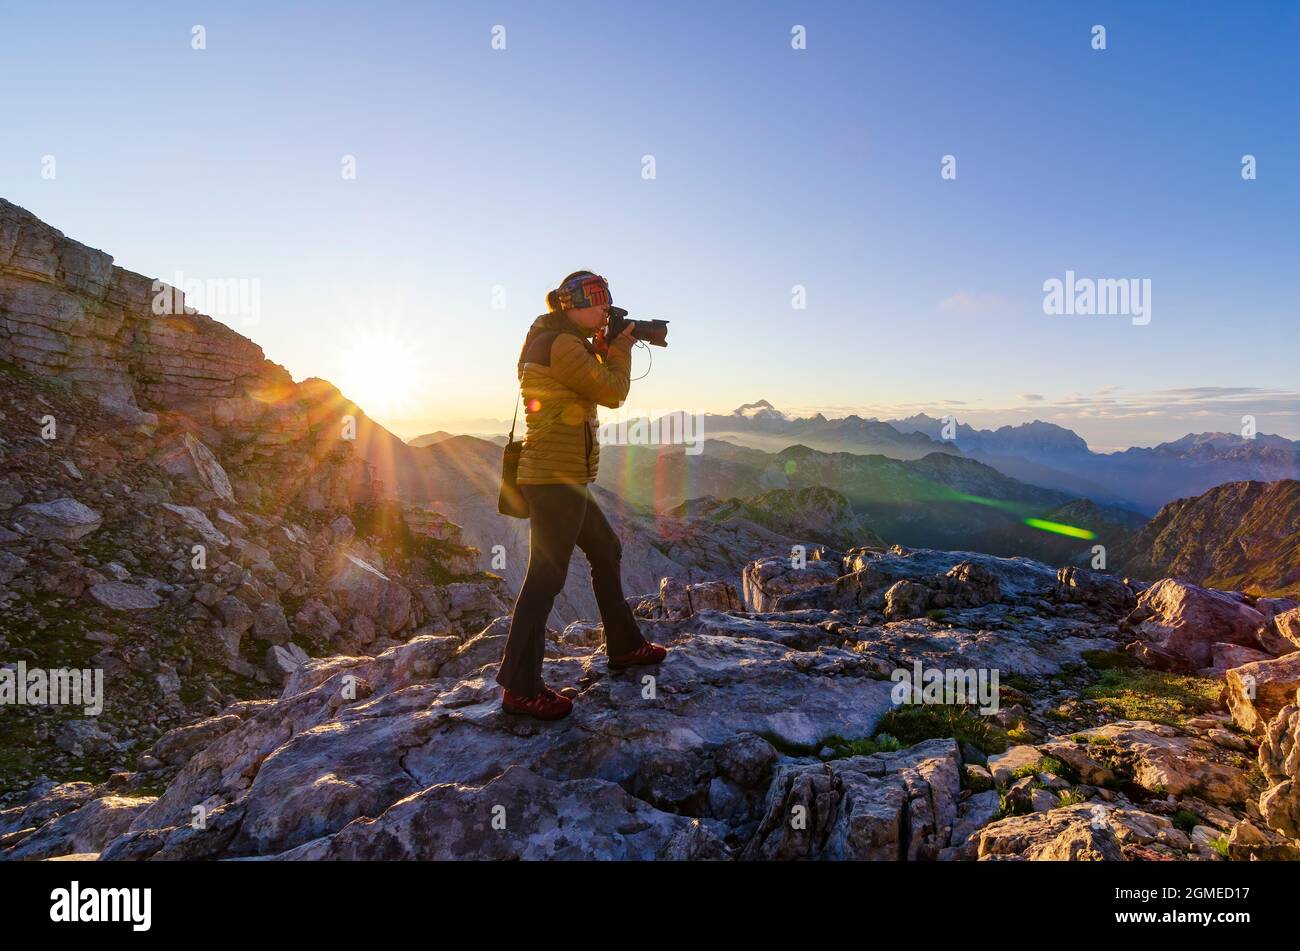 Fotografin macht Fotos auf dem Berggipfel. Outdoor-Aktivitäten, Wandern, Aktivurlaub und Wanderlust-Konzept. Stockfoto